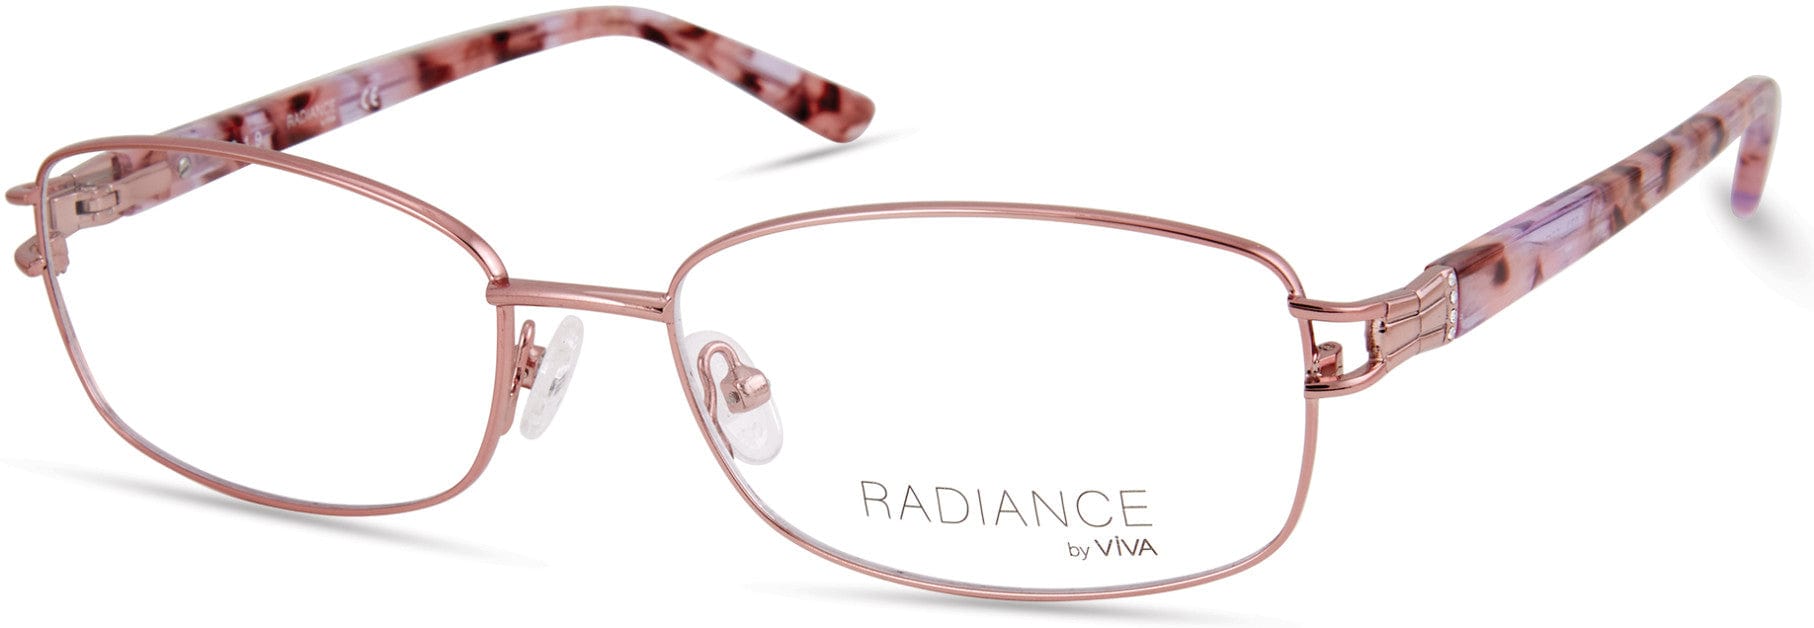 Viva VV8001 Rectangular Eyeglasses 072-072 - Shiny Pink